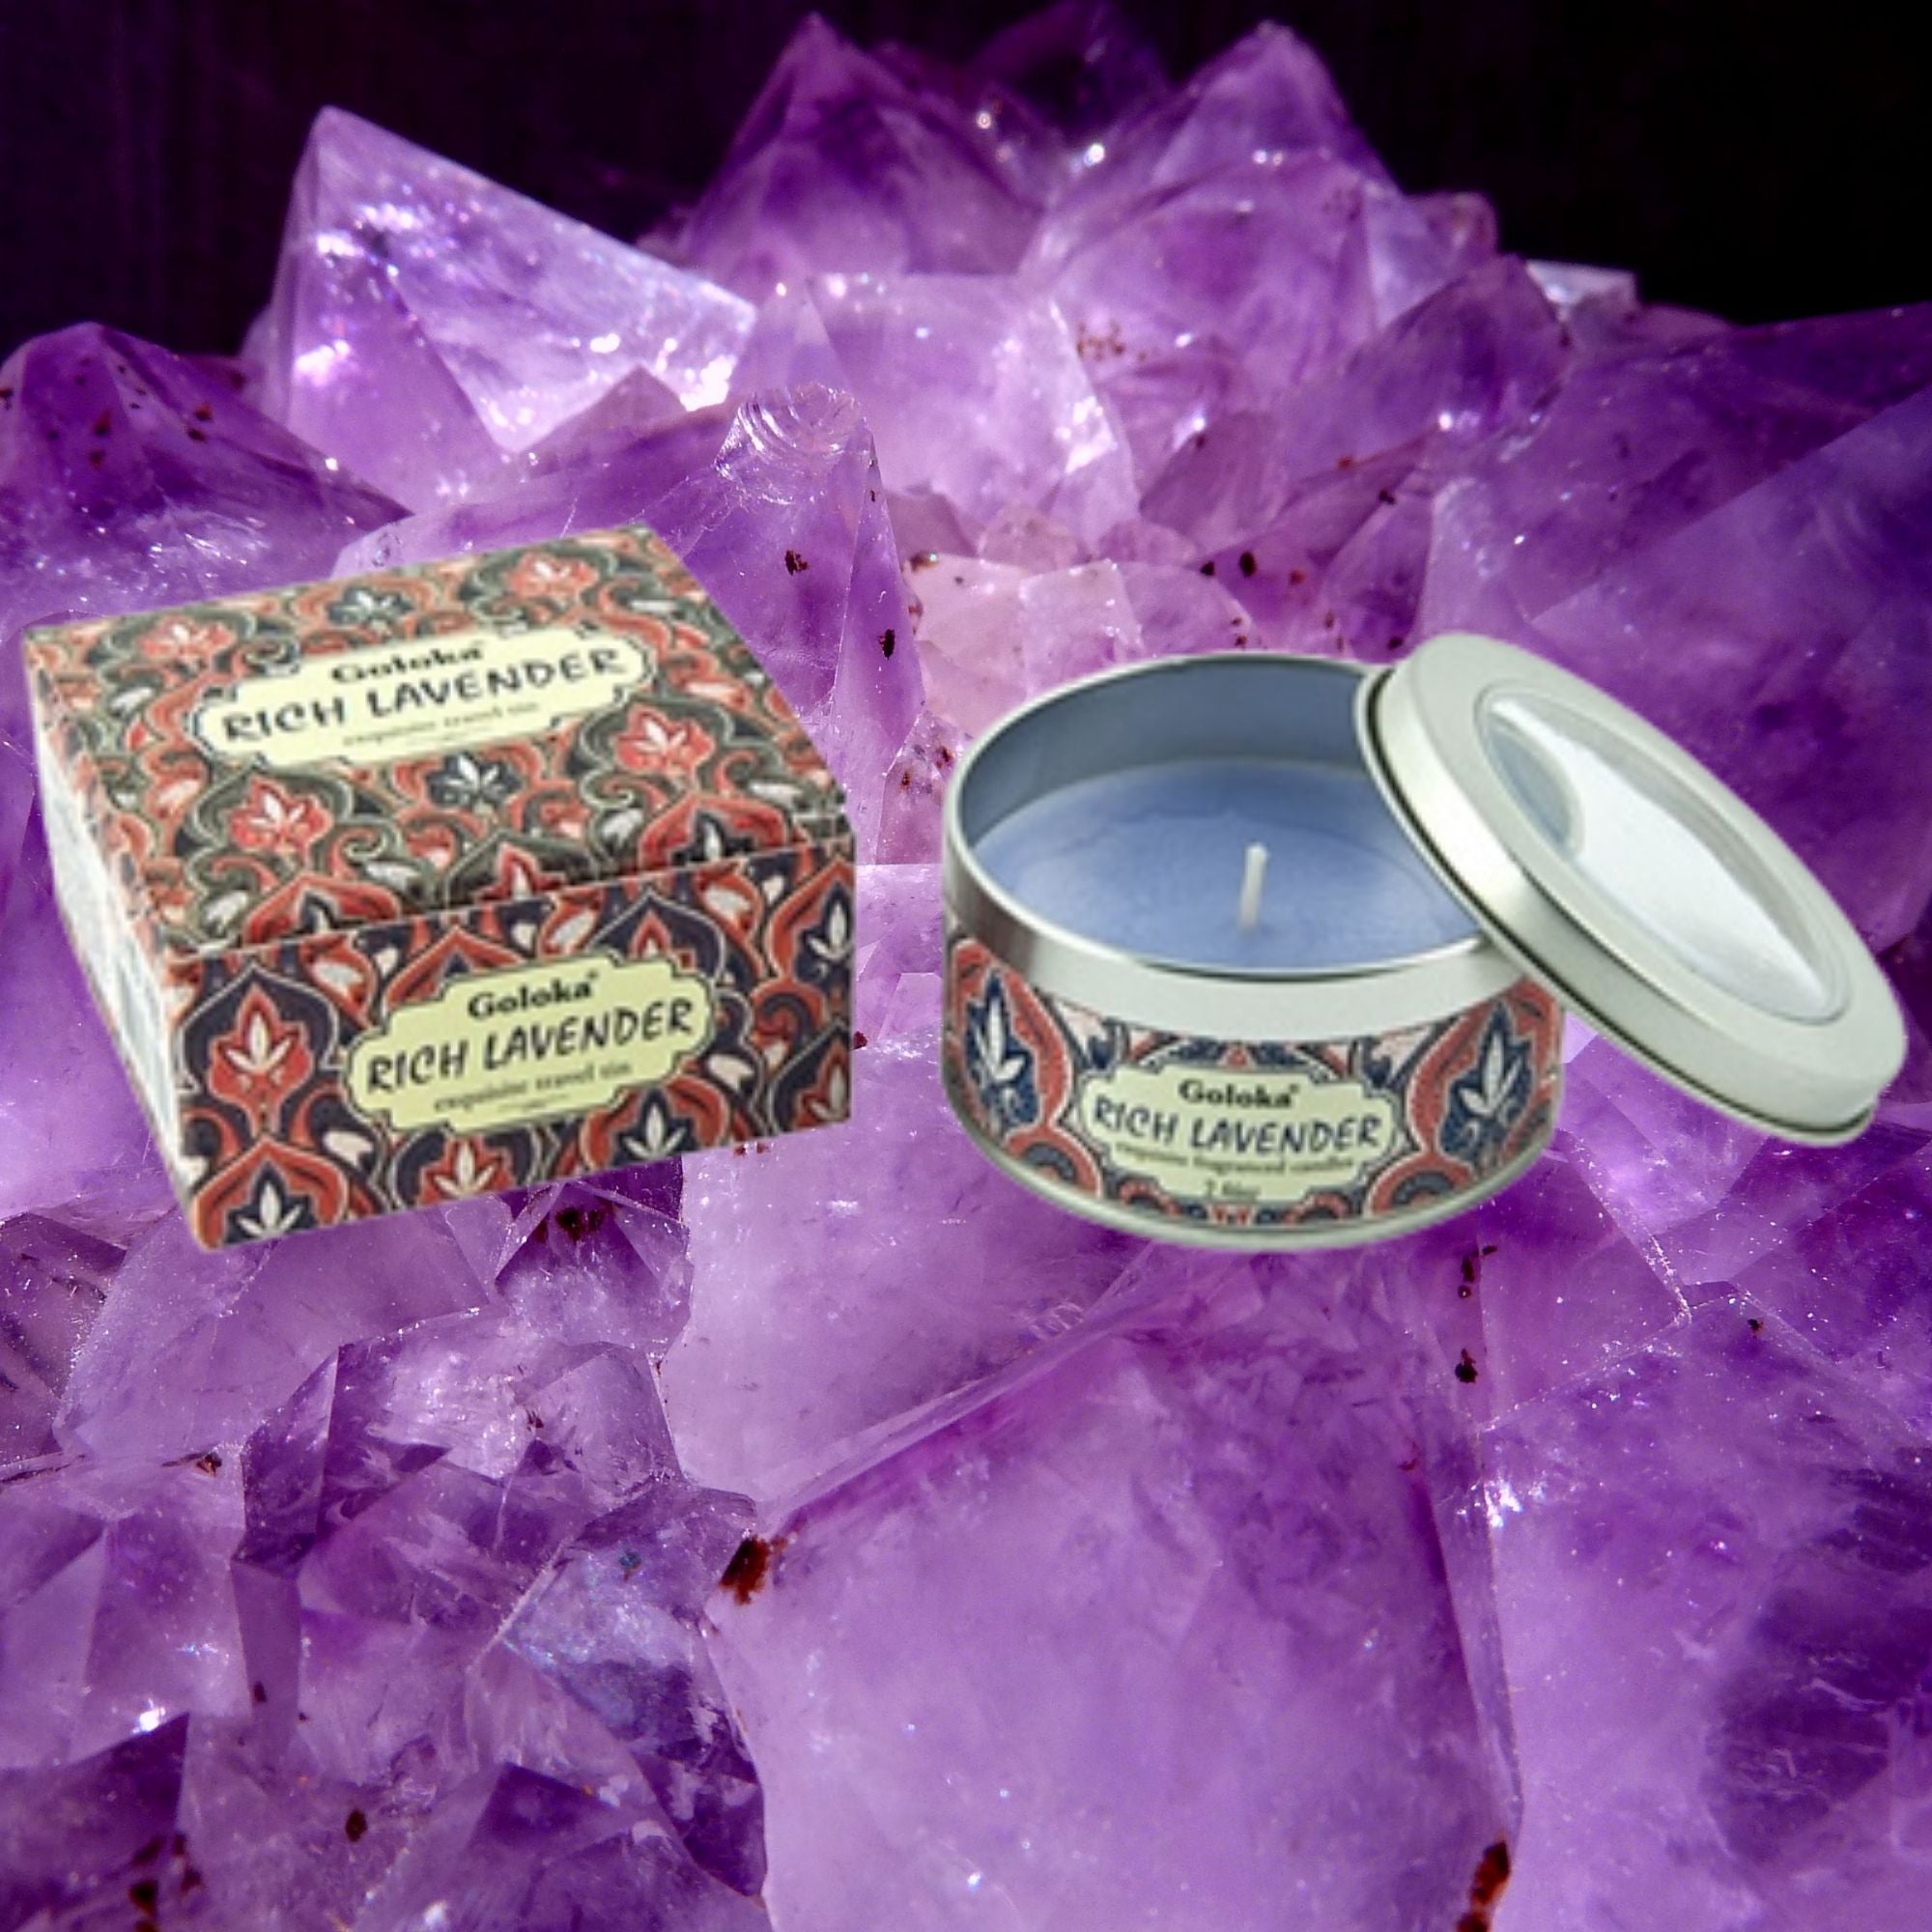 Goloka Rich Lavender Amethyst Crystal Candle